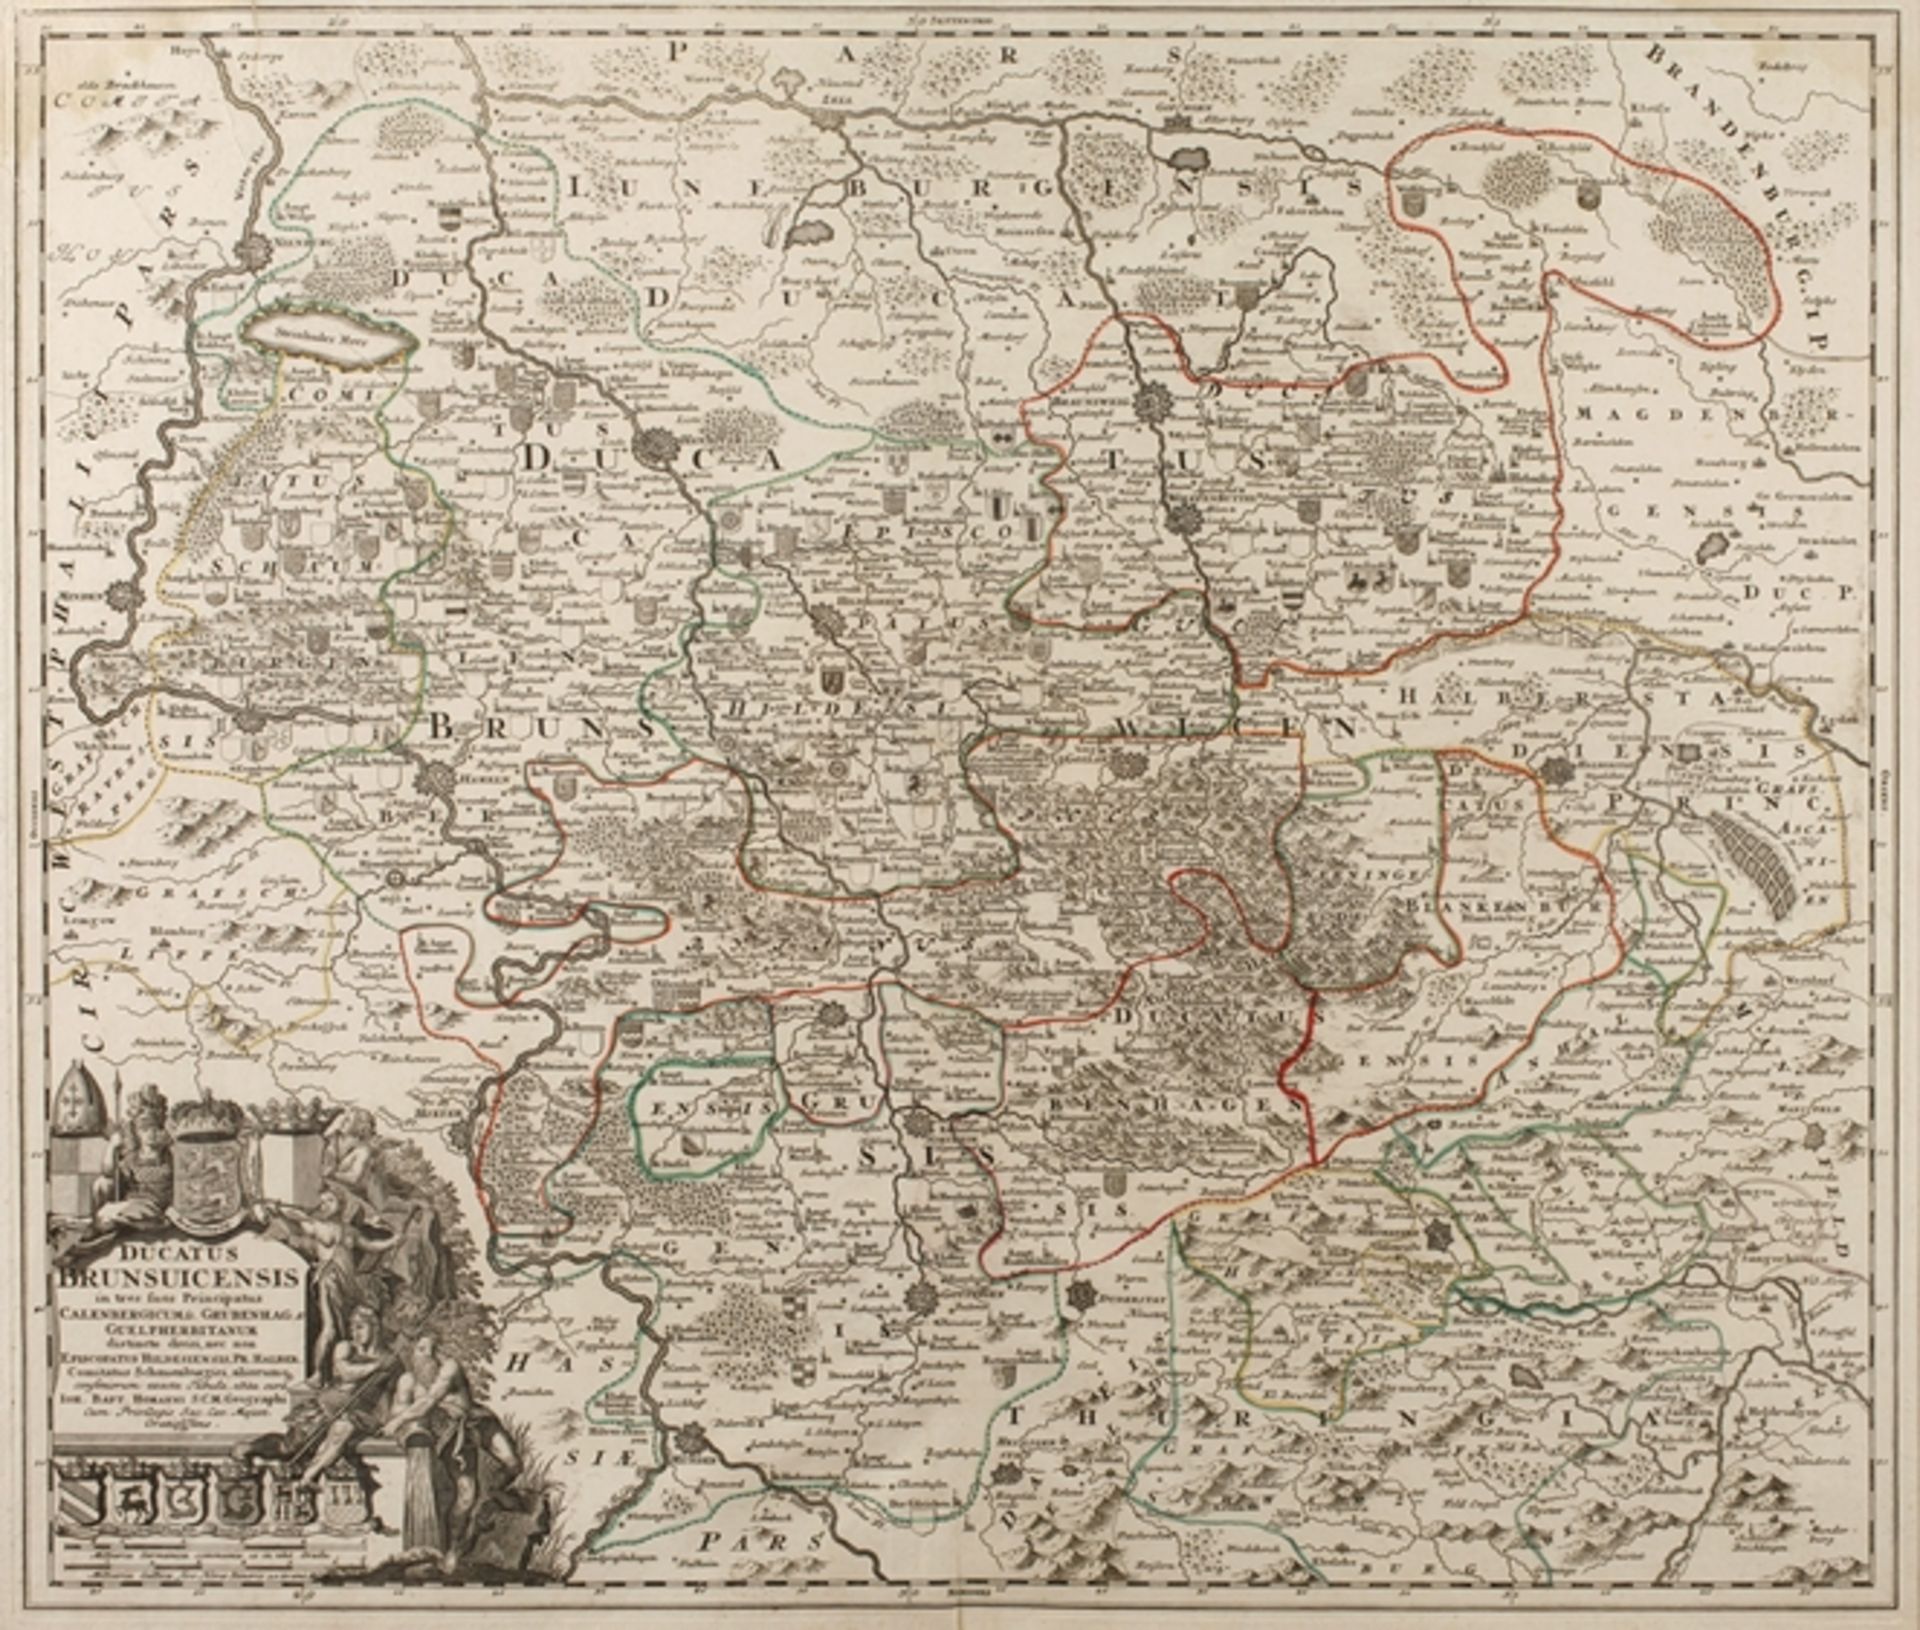 Johann Baptist Homann, Karte Braunschweig